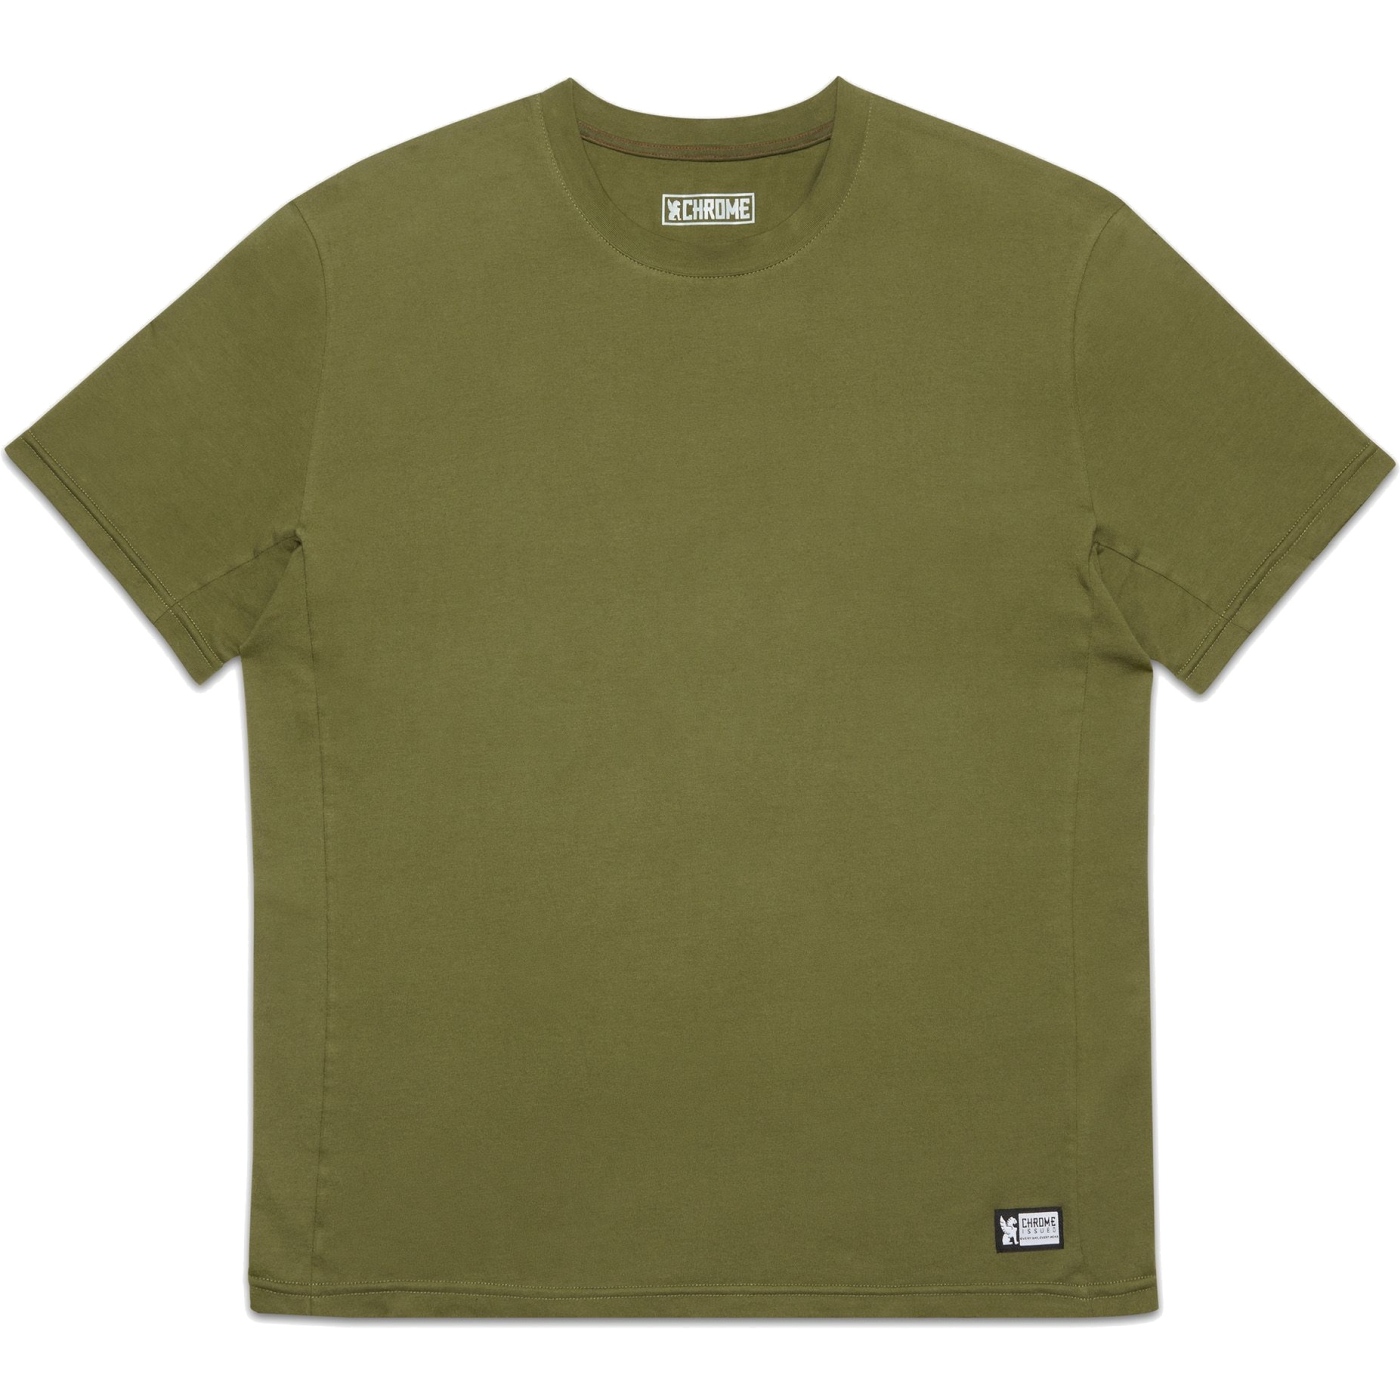 Produktbild von CHROME Issued Short Sleeve Tee T-Shirt - Olive Branch